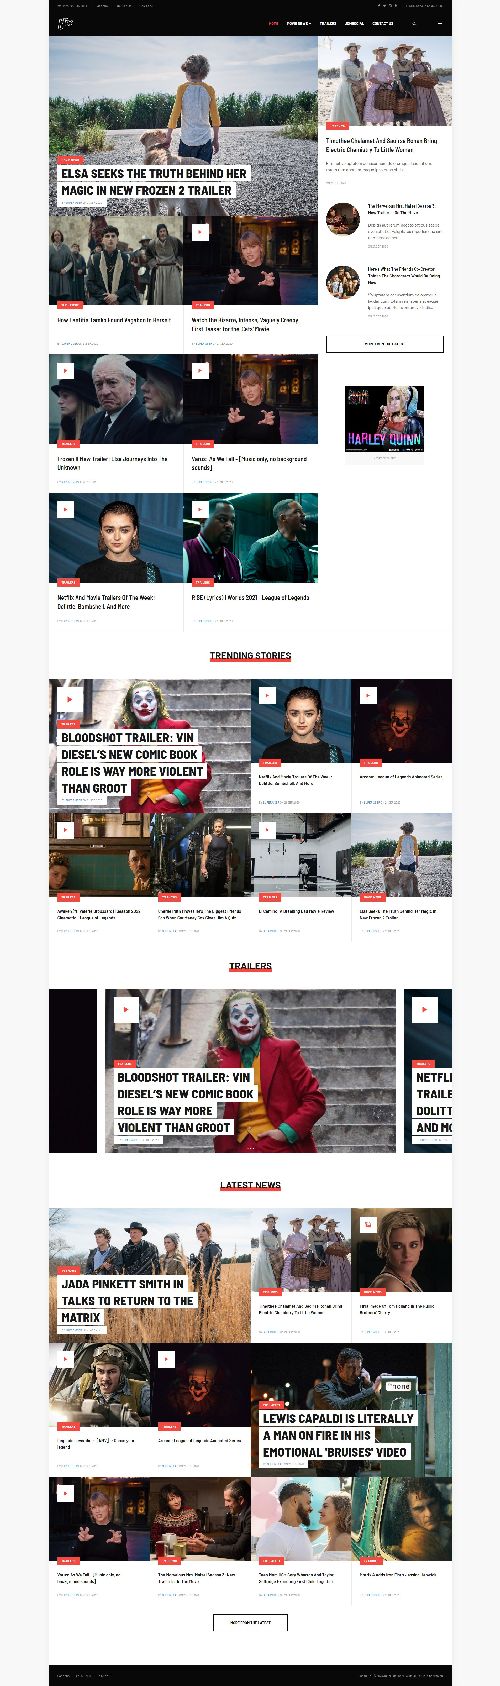 JA Flix - Movie News and Magazine Websites Joomla 4 Template